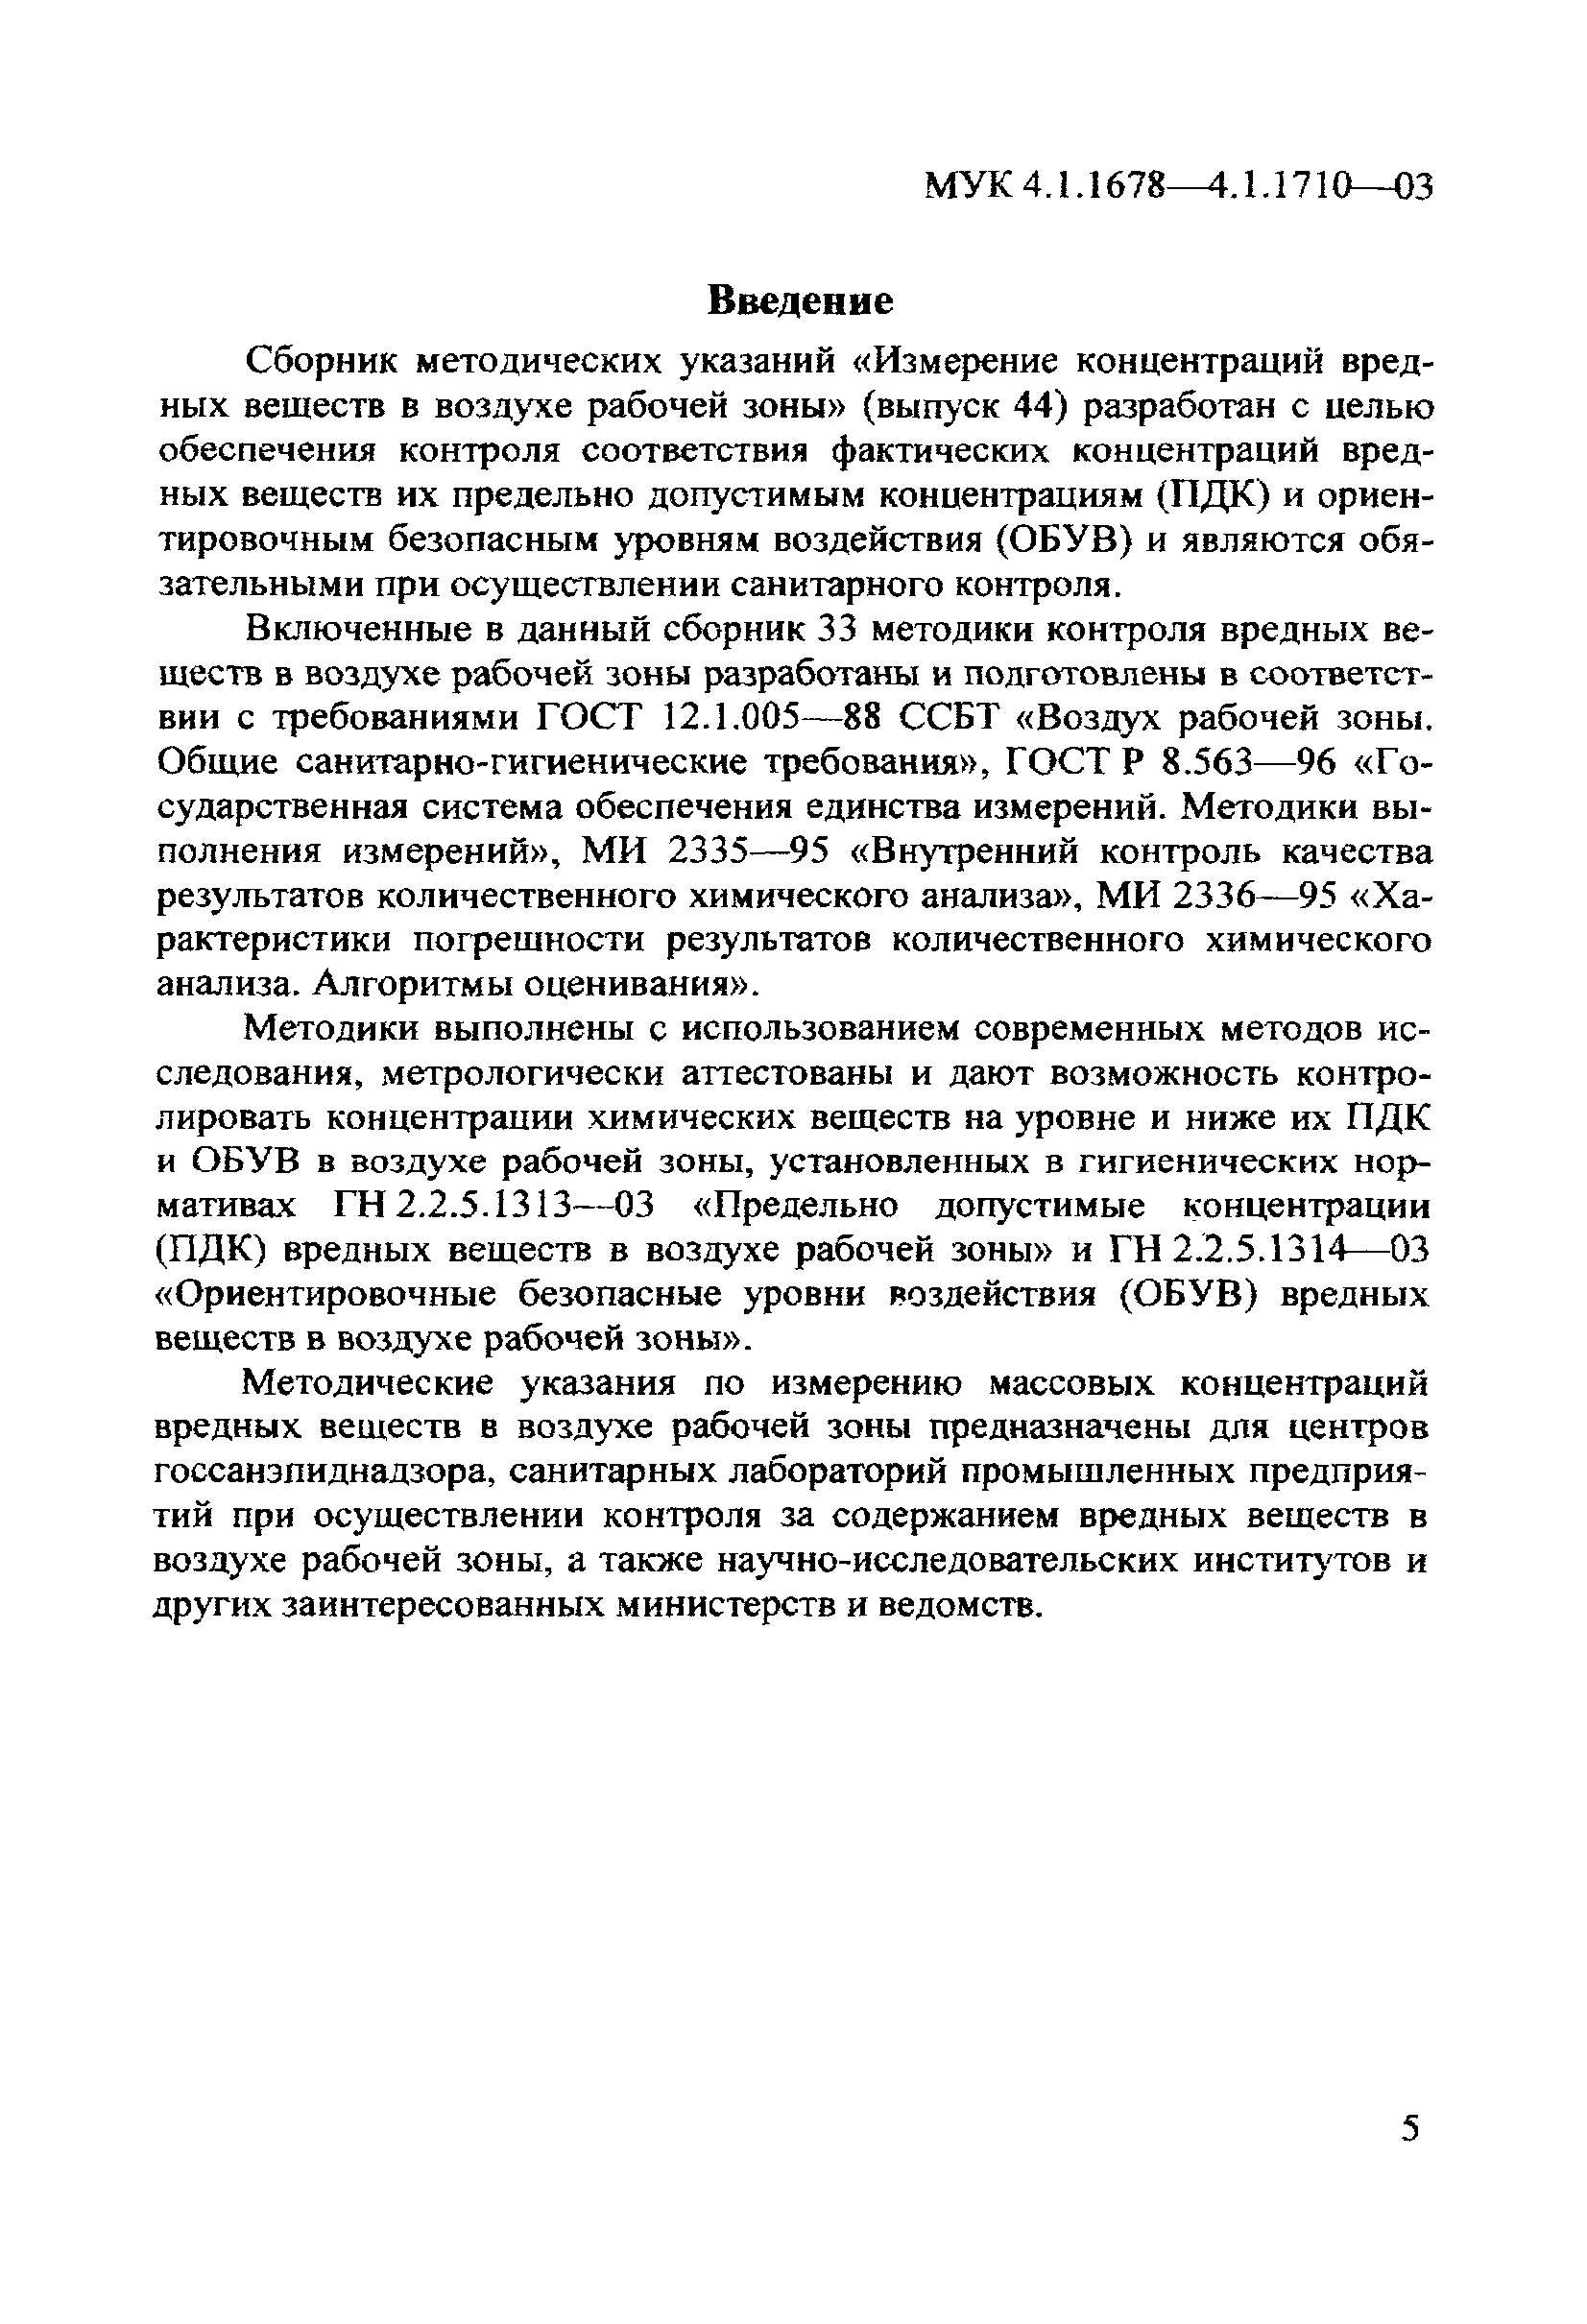 МУК 4.1.1708-03